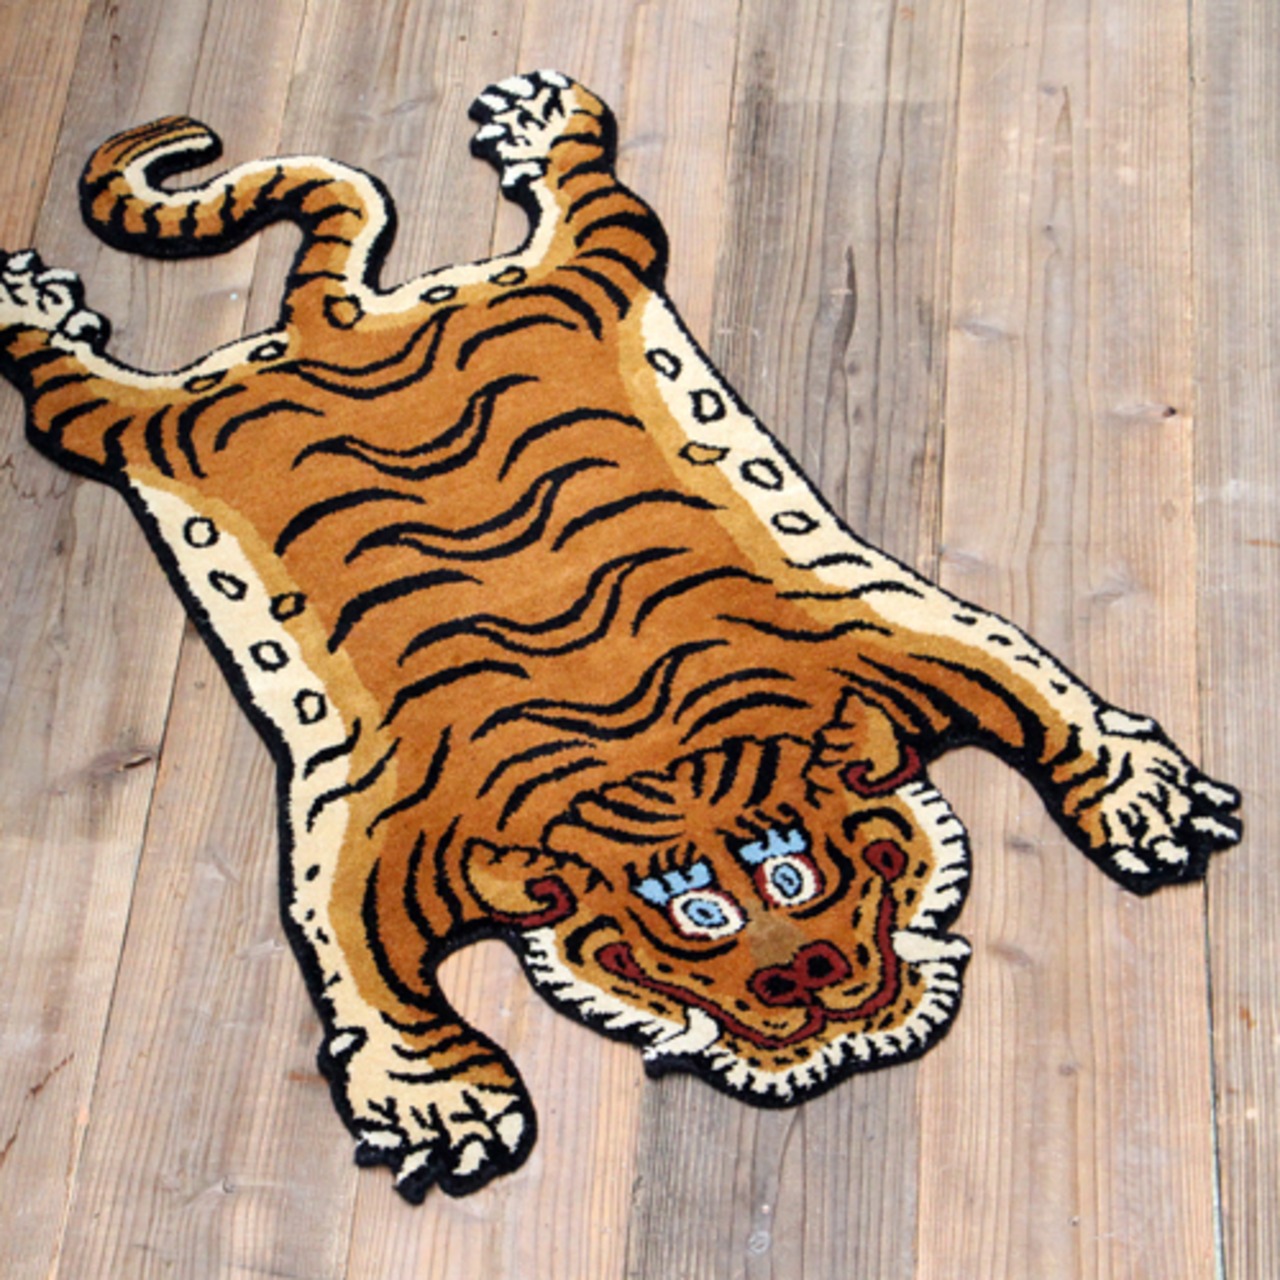 Tibetan Tiger Rug Size S/タイガーチベタンラグ/ラグ